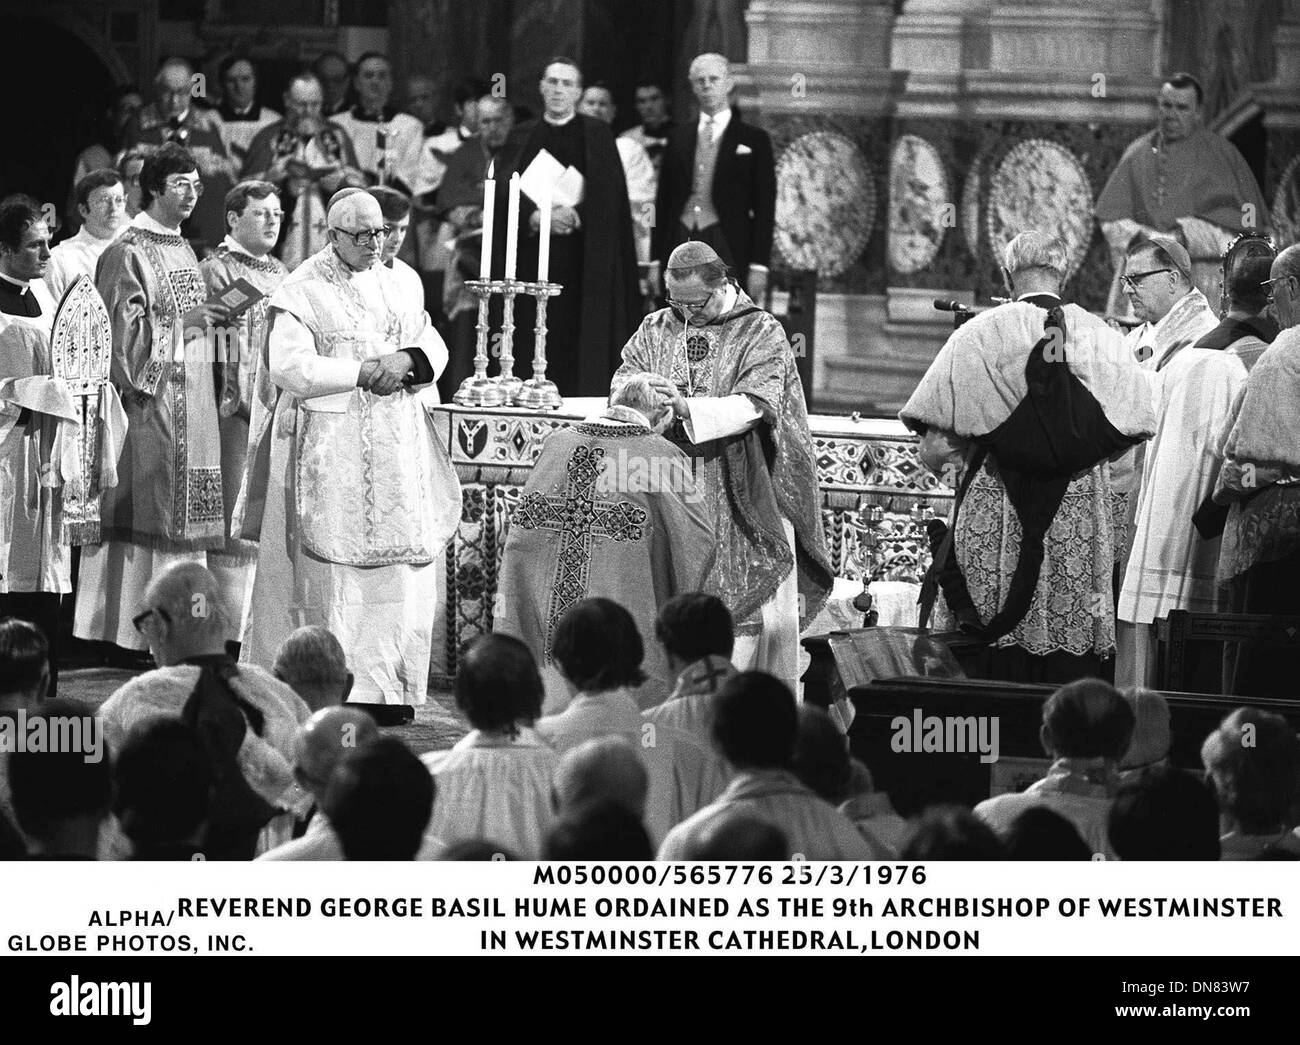 Mar 25, 1976 - Londra, Gran Bretagna - M050000/565776025/3/1976.il Reverendo George Basil Hume ordinato come il nono Arcivescovo di Westminster .NELLA CATTEDRALE DI WESTMINISTER, Londra.Â©1976(Immagine di credito: © Globo foto/ZUMAPRESS.com) Foto Stock